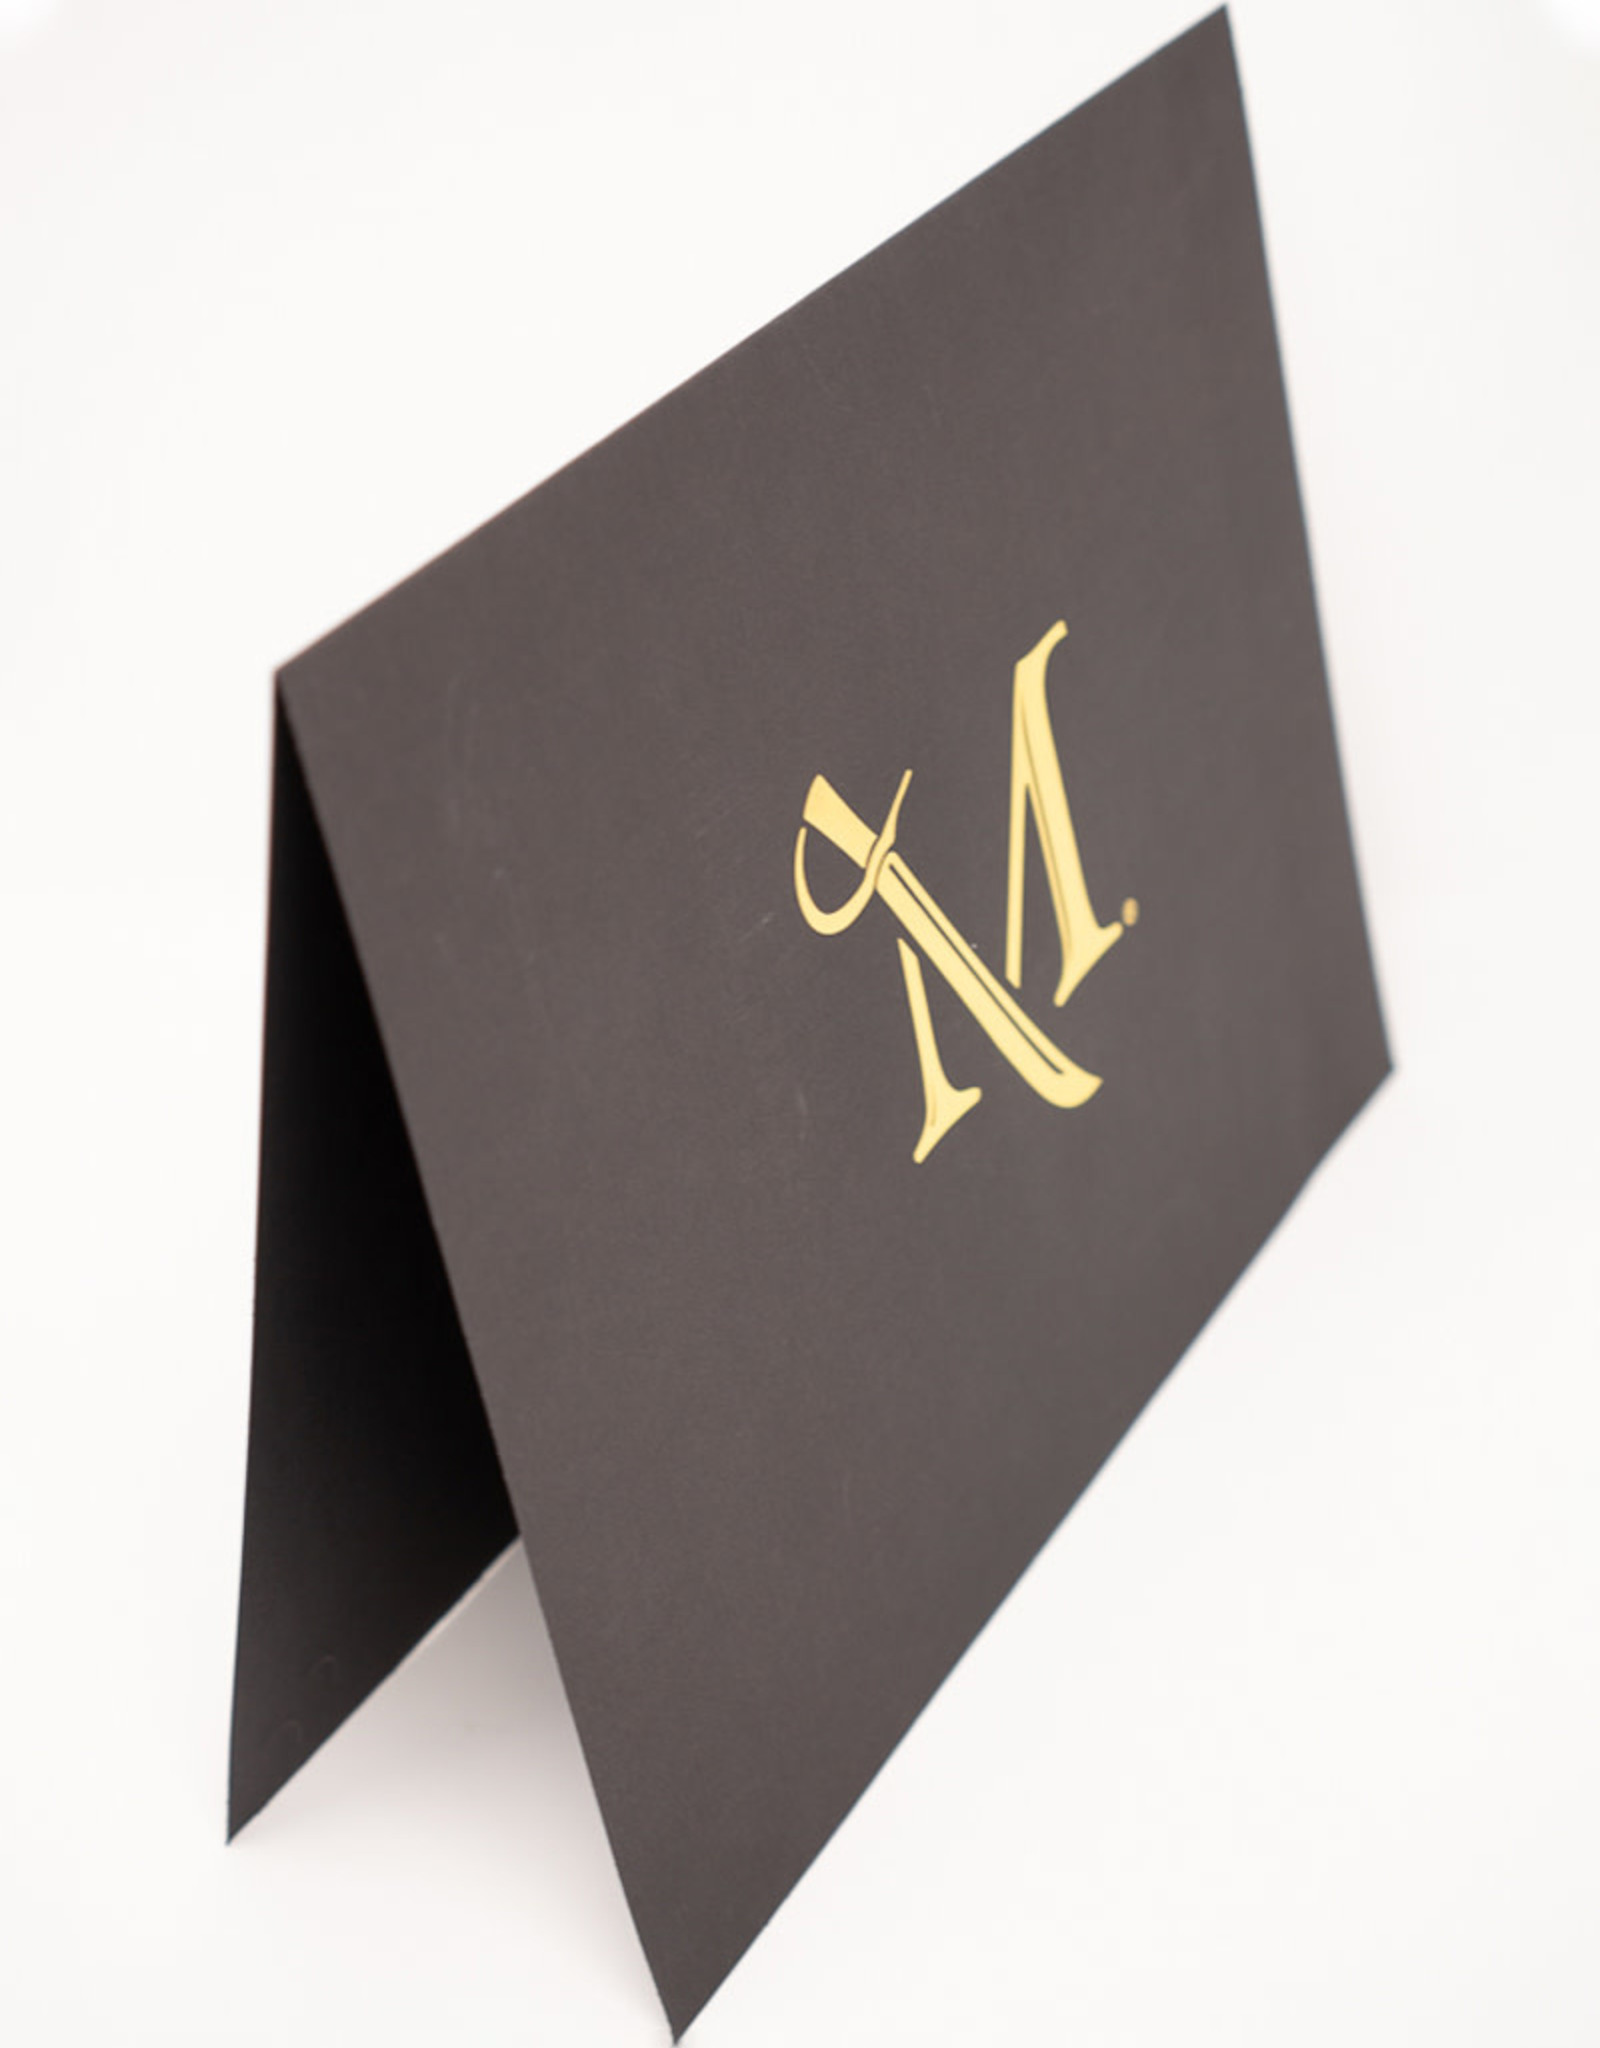 M Sword Black Linen Certificate Holder